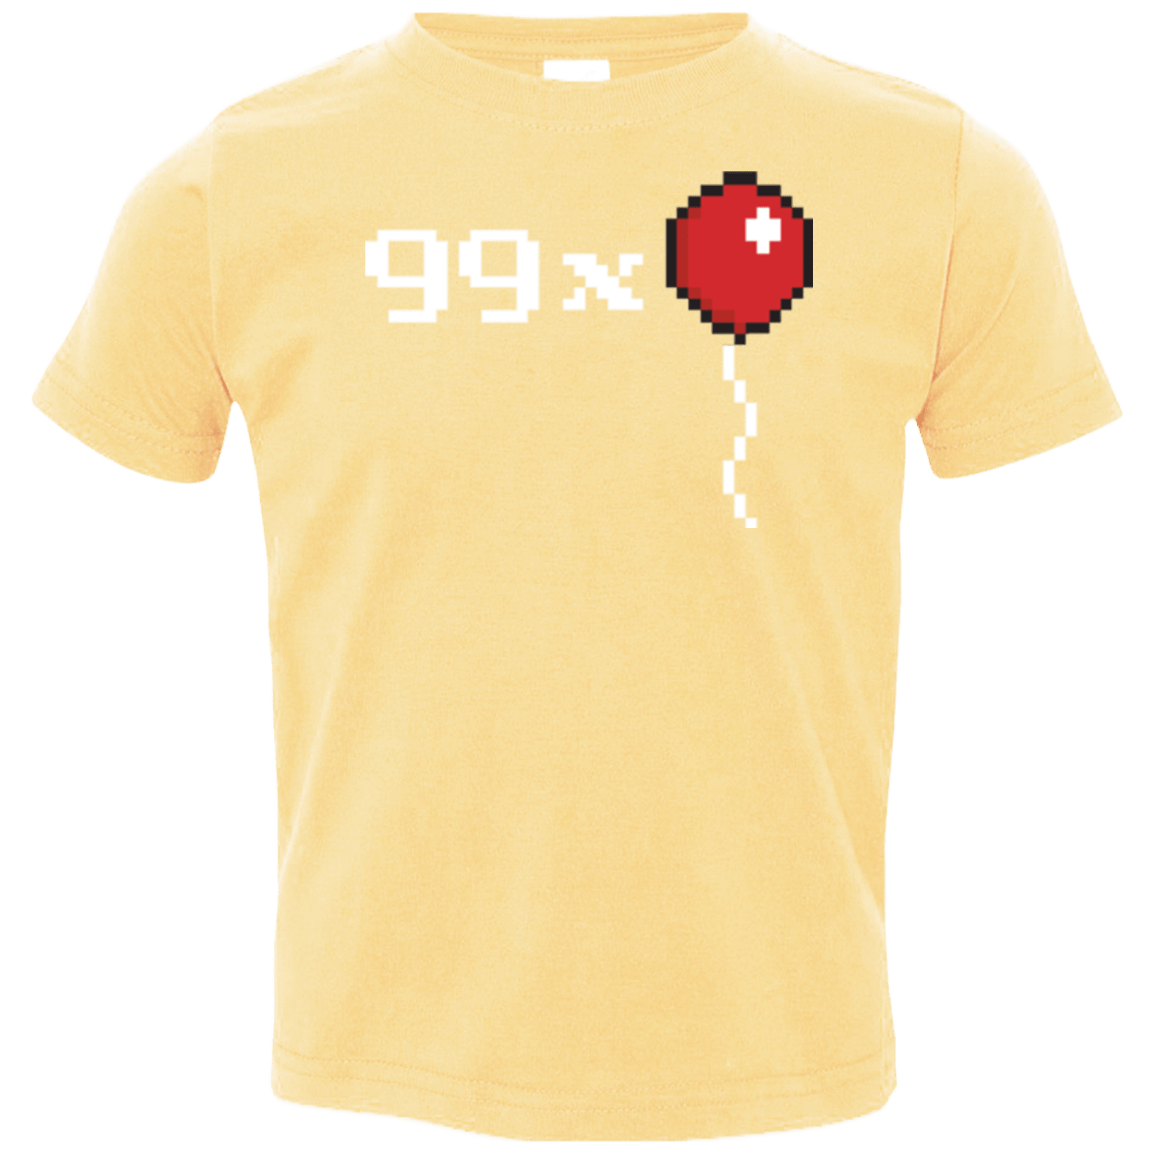 T-Shirts Butter / 2T 99x Balloon Toddler Premium T-Shirt